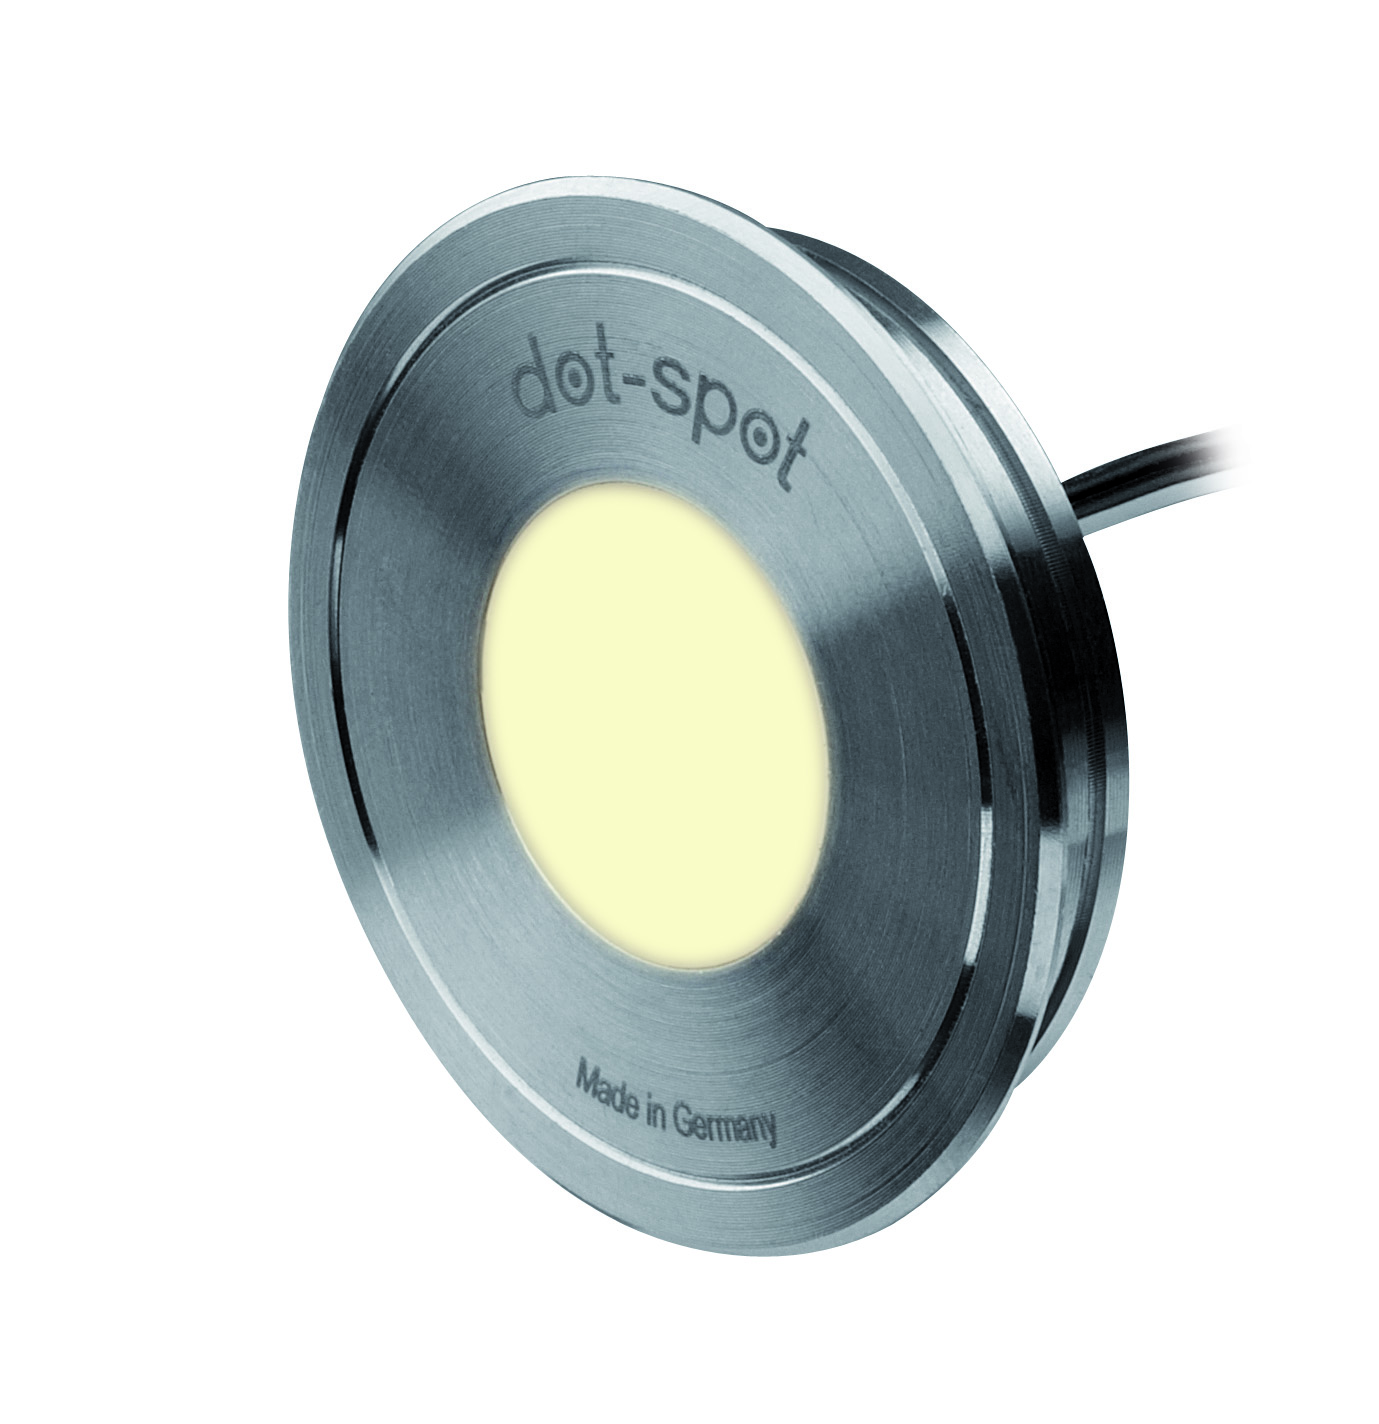 dot-spot Moderne Einbauleuchten & Einbaulampen fürs Bad von dot-spot LED Akzentlichtpunkt Disc-Dot, rund, 20 mm 50701.827.01